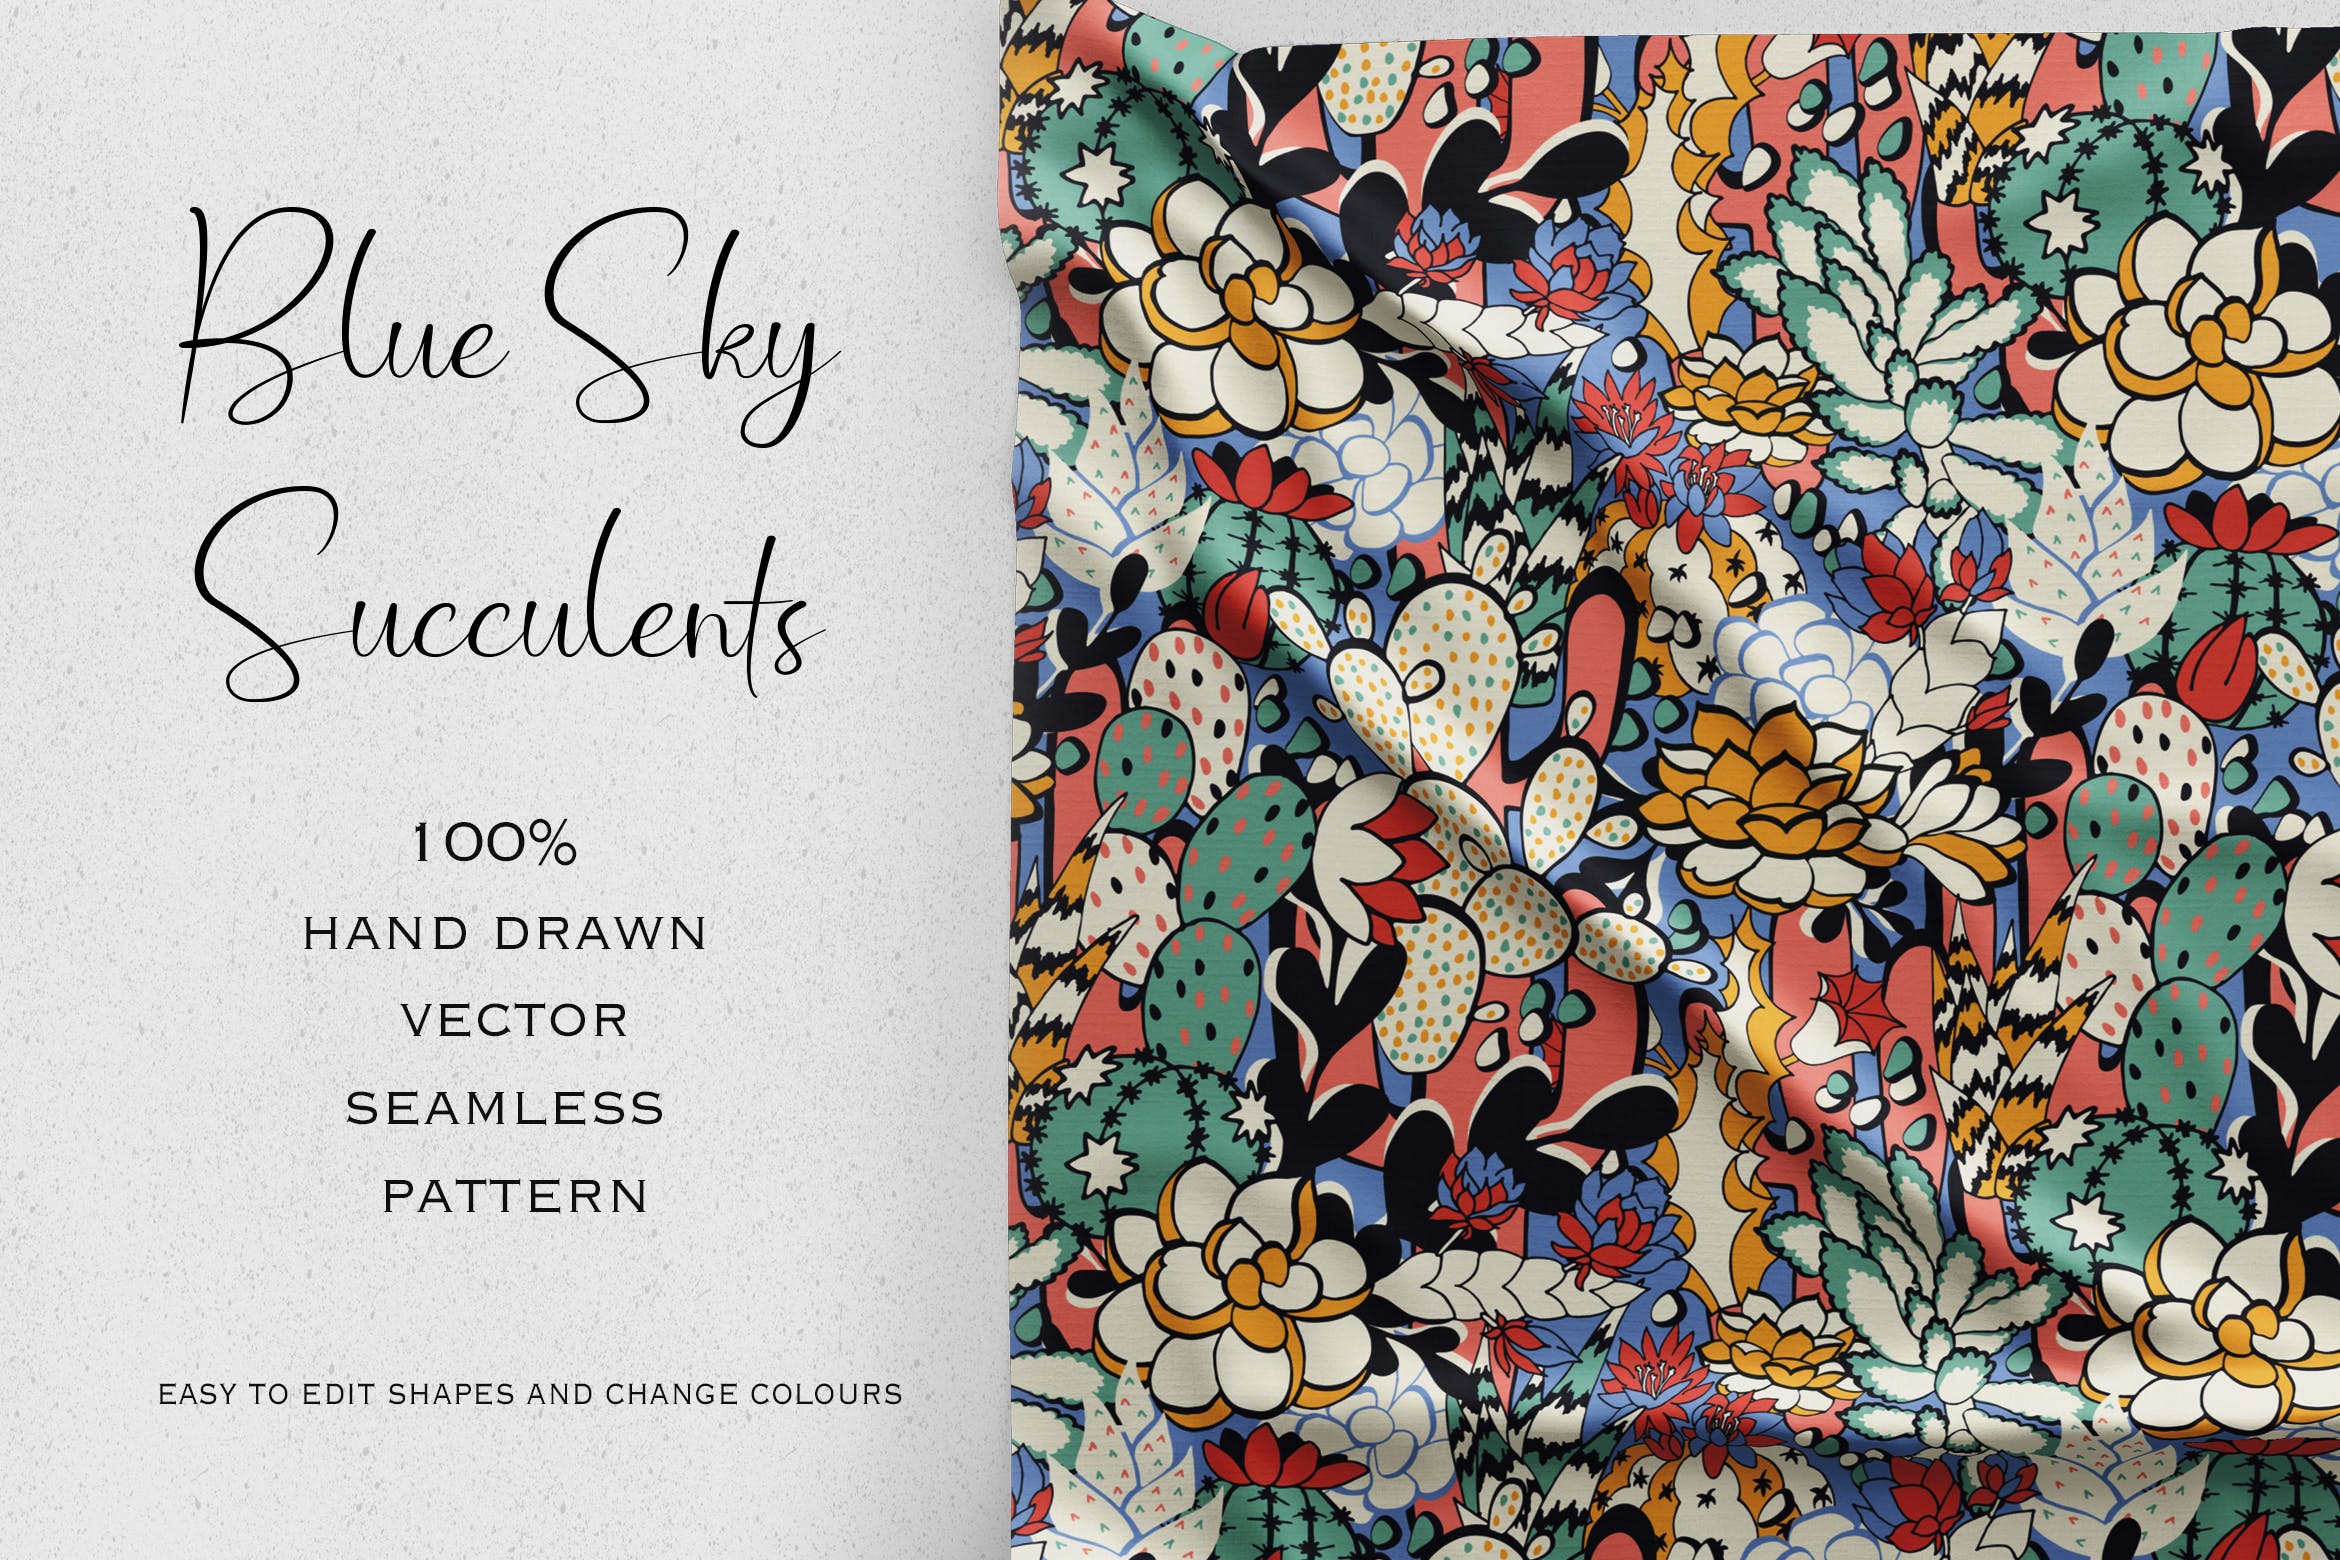 多肉植物彩绘图案无缝贴图背景素材 Blue Sky Succulents插图